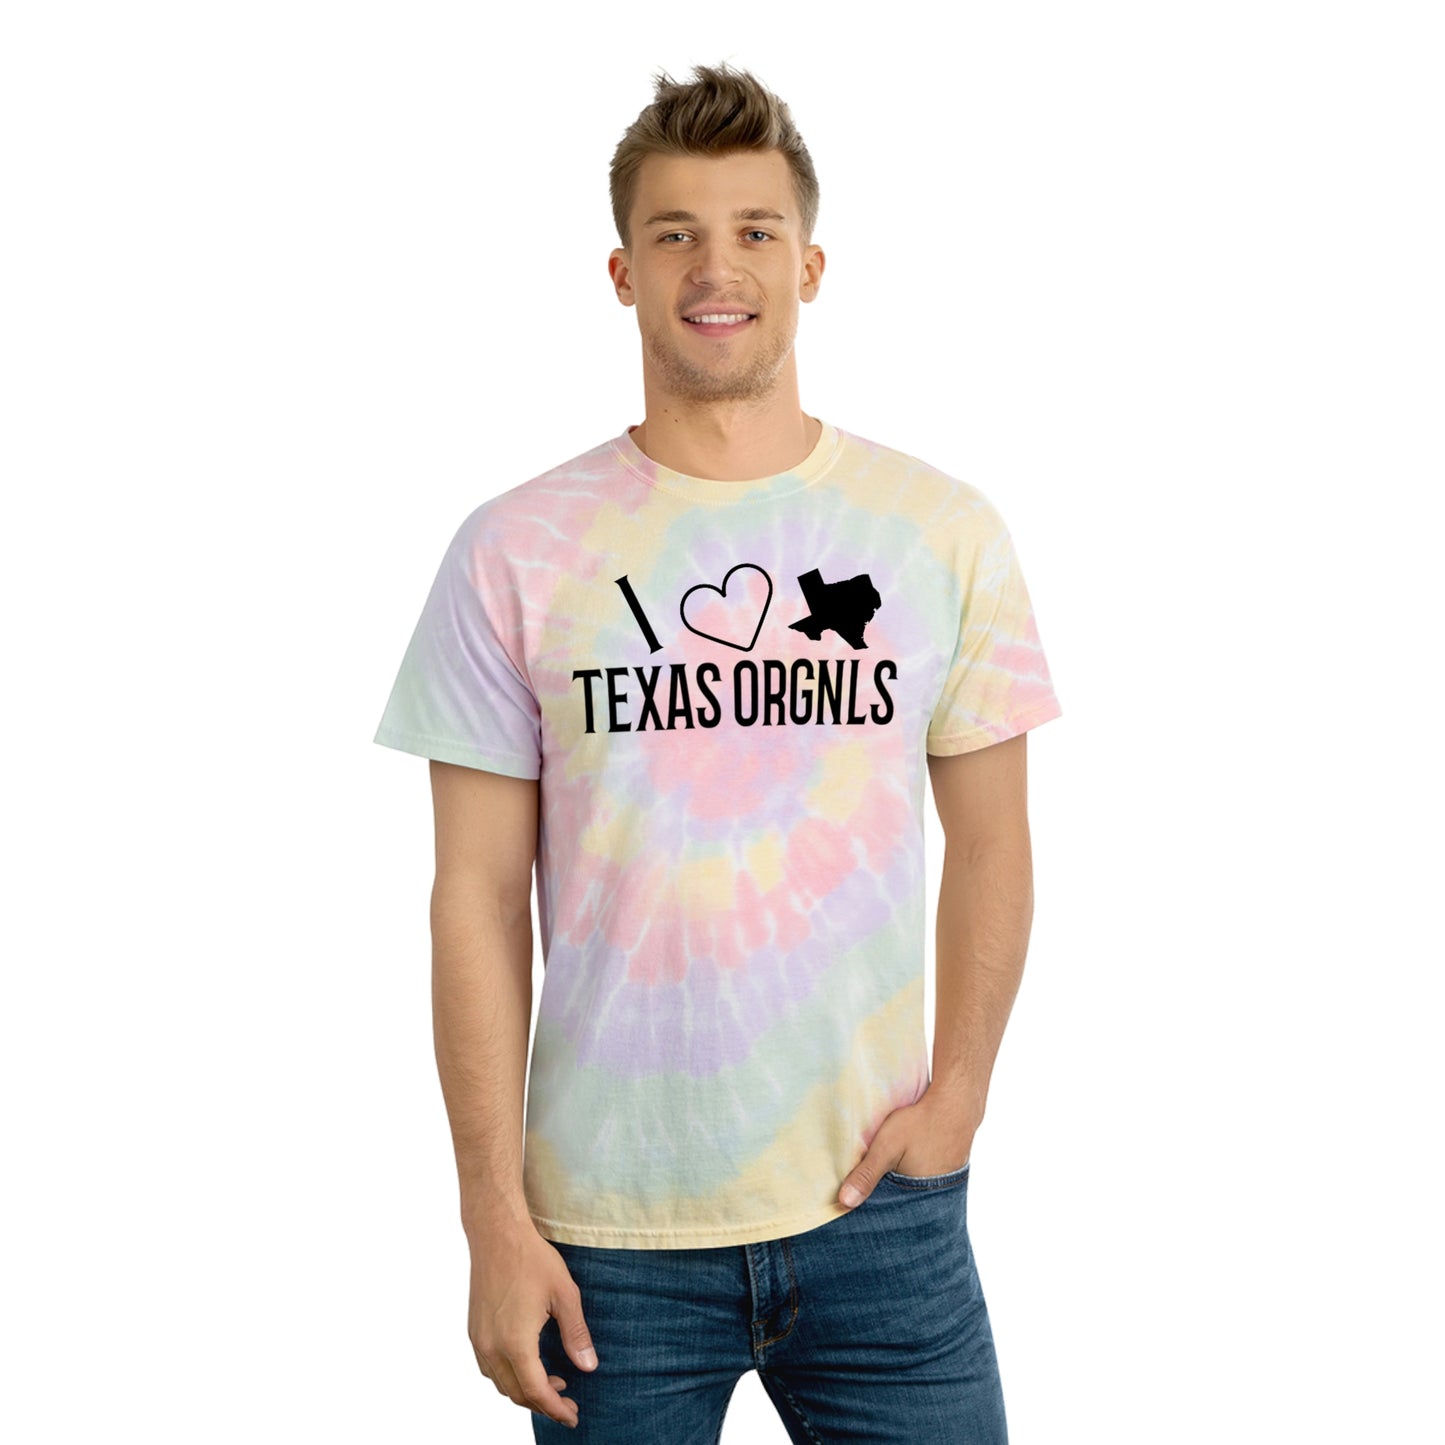 Texas Orgnls “I Heart Tx” Tie-Dye Tee, Spiral